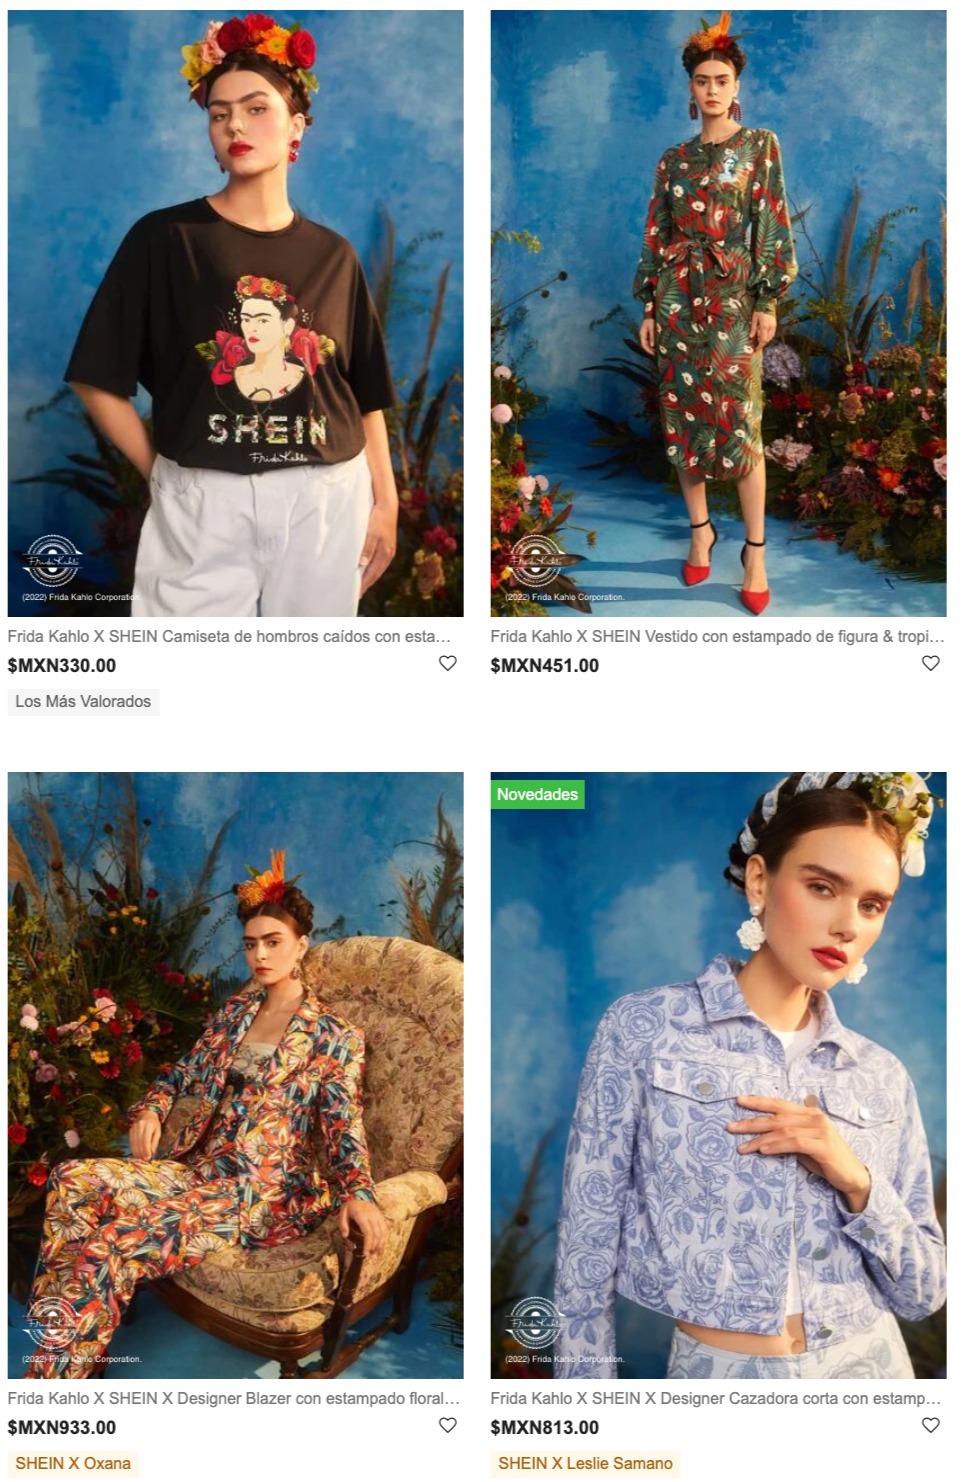 Shein lanza colección de ropa inspirada en Frida Kahlo